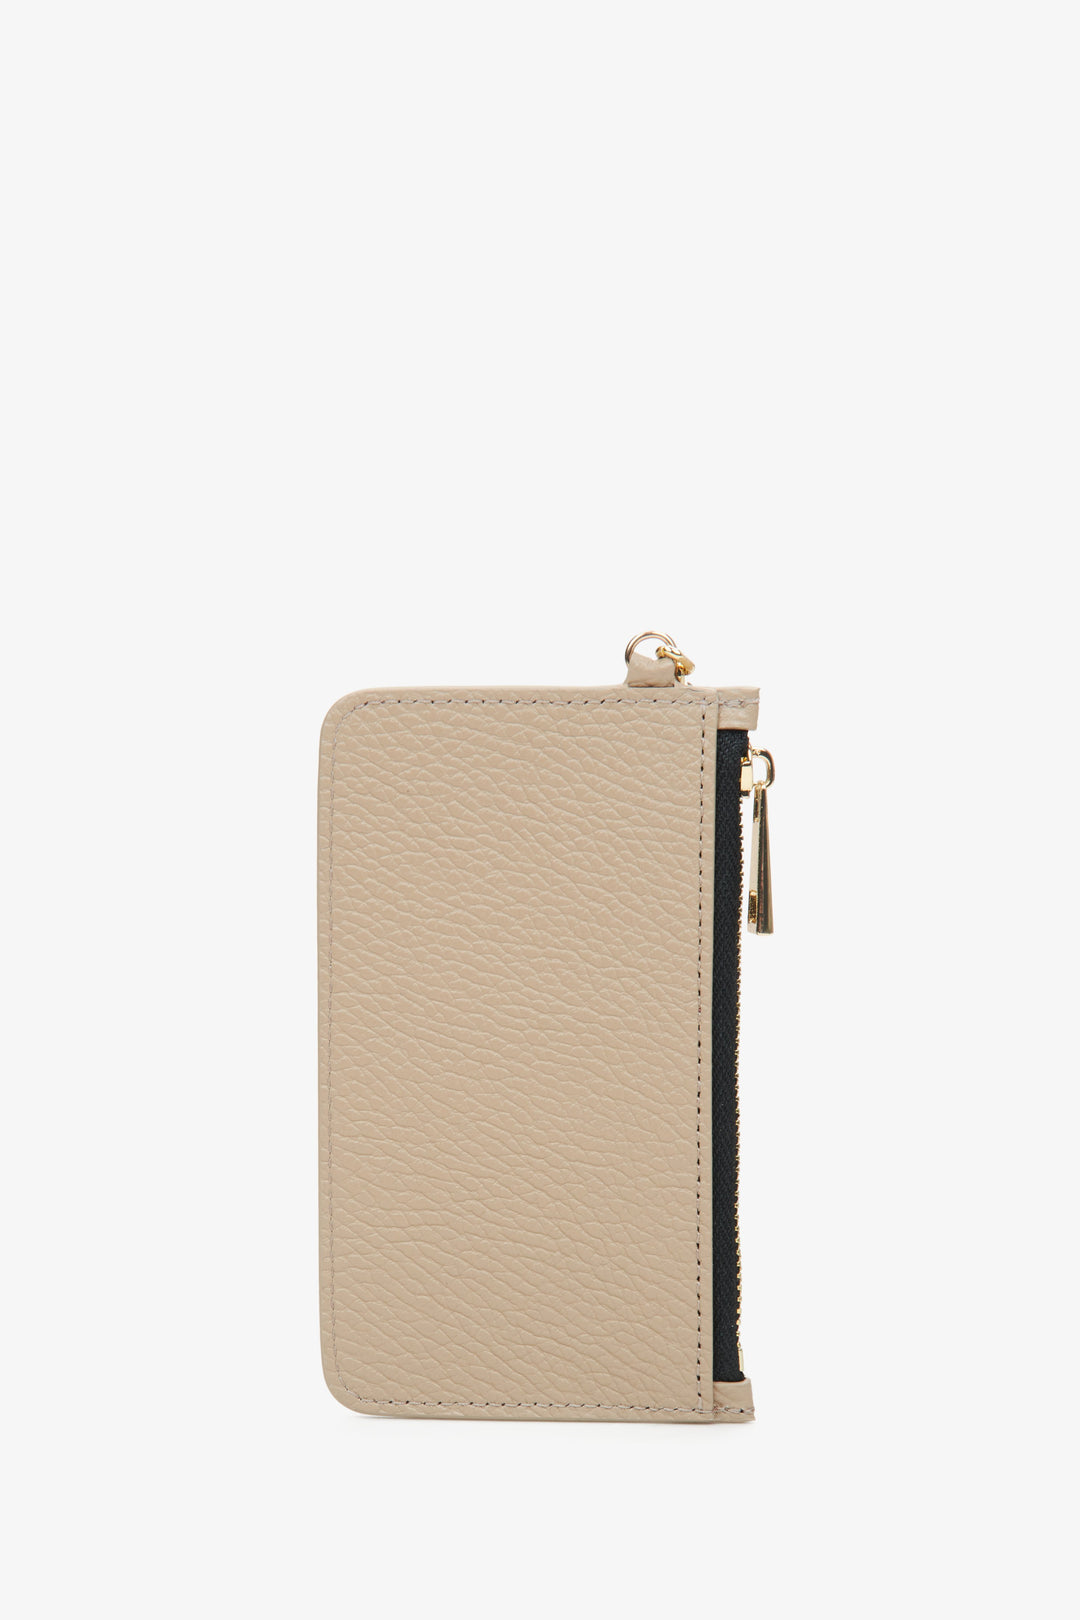 Estro women's compact beige wallet - reverse side.